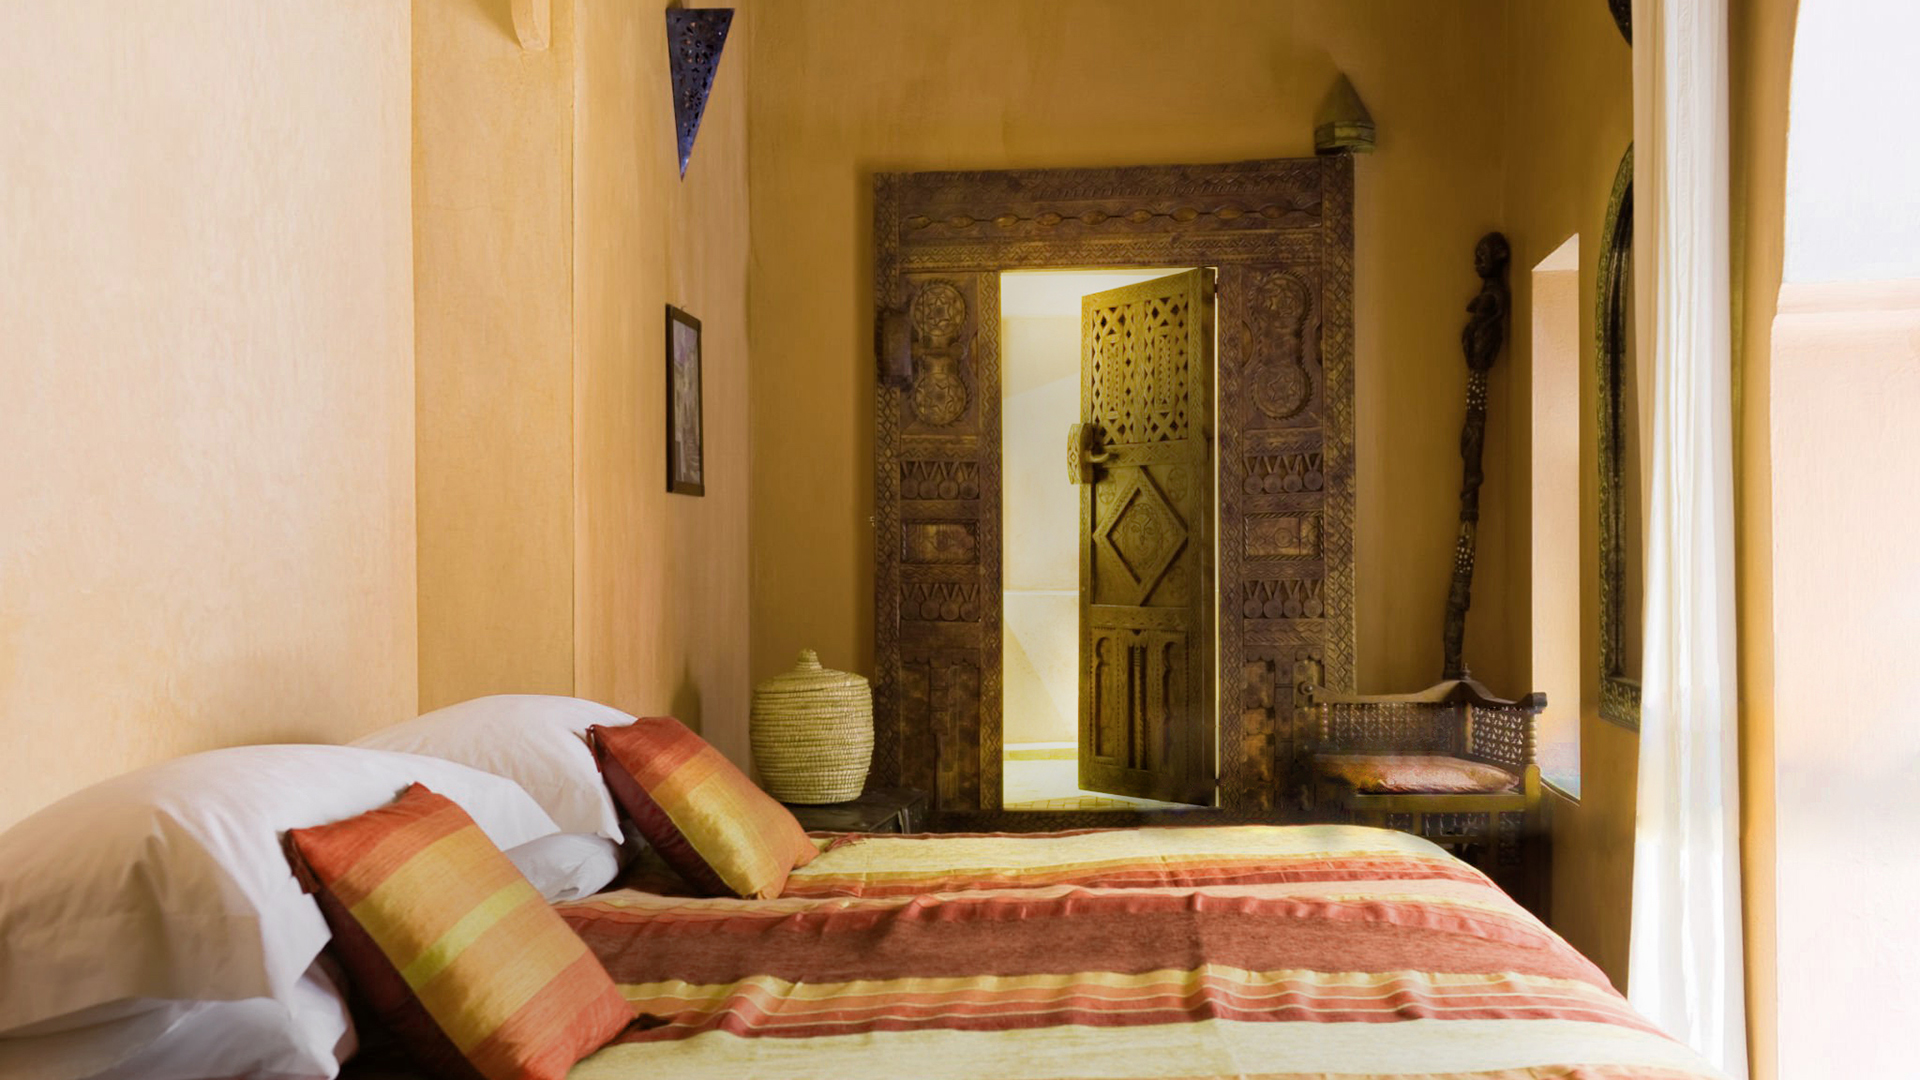 Spavaća soba u arapskom stilu s tadelaktom na zidovima